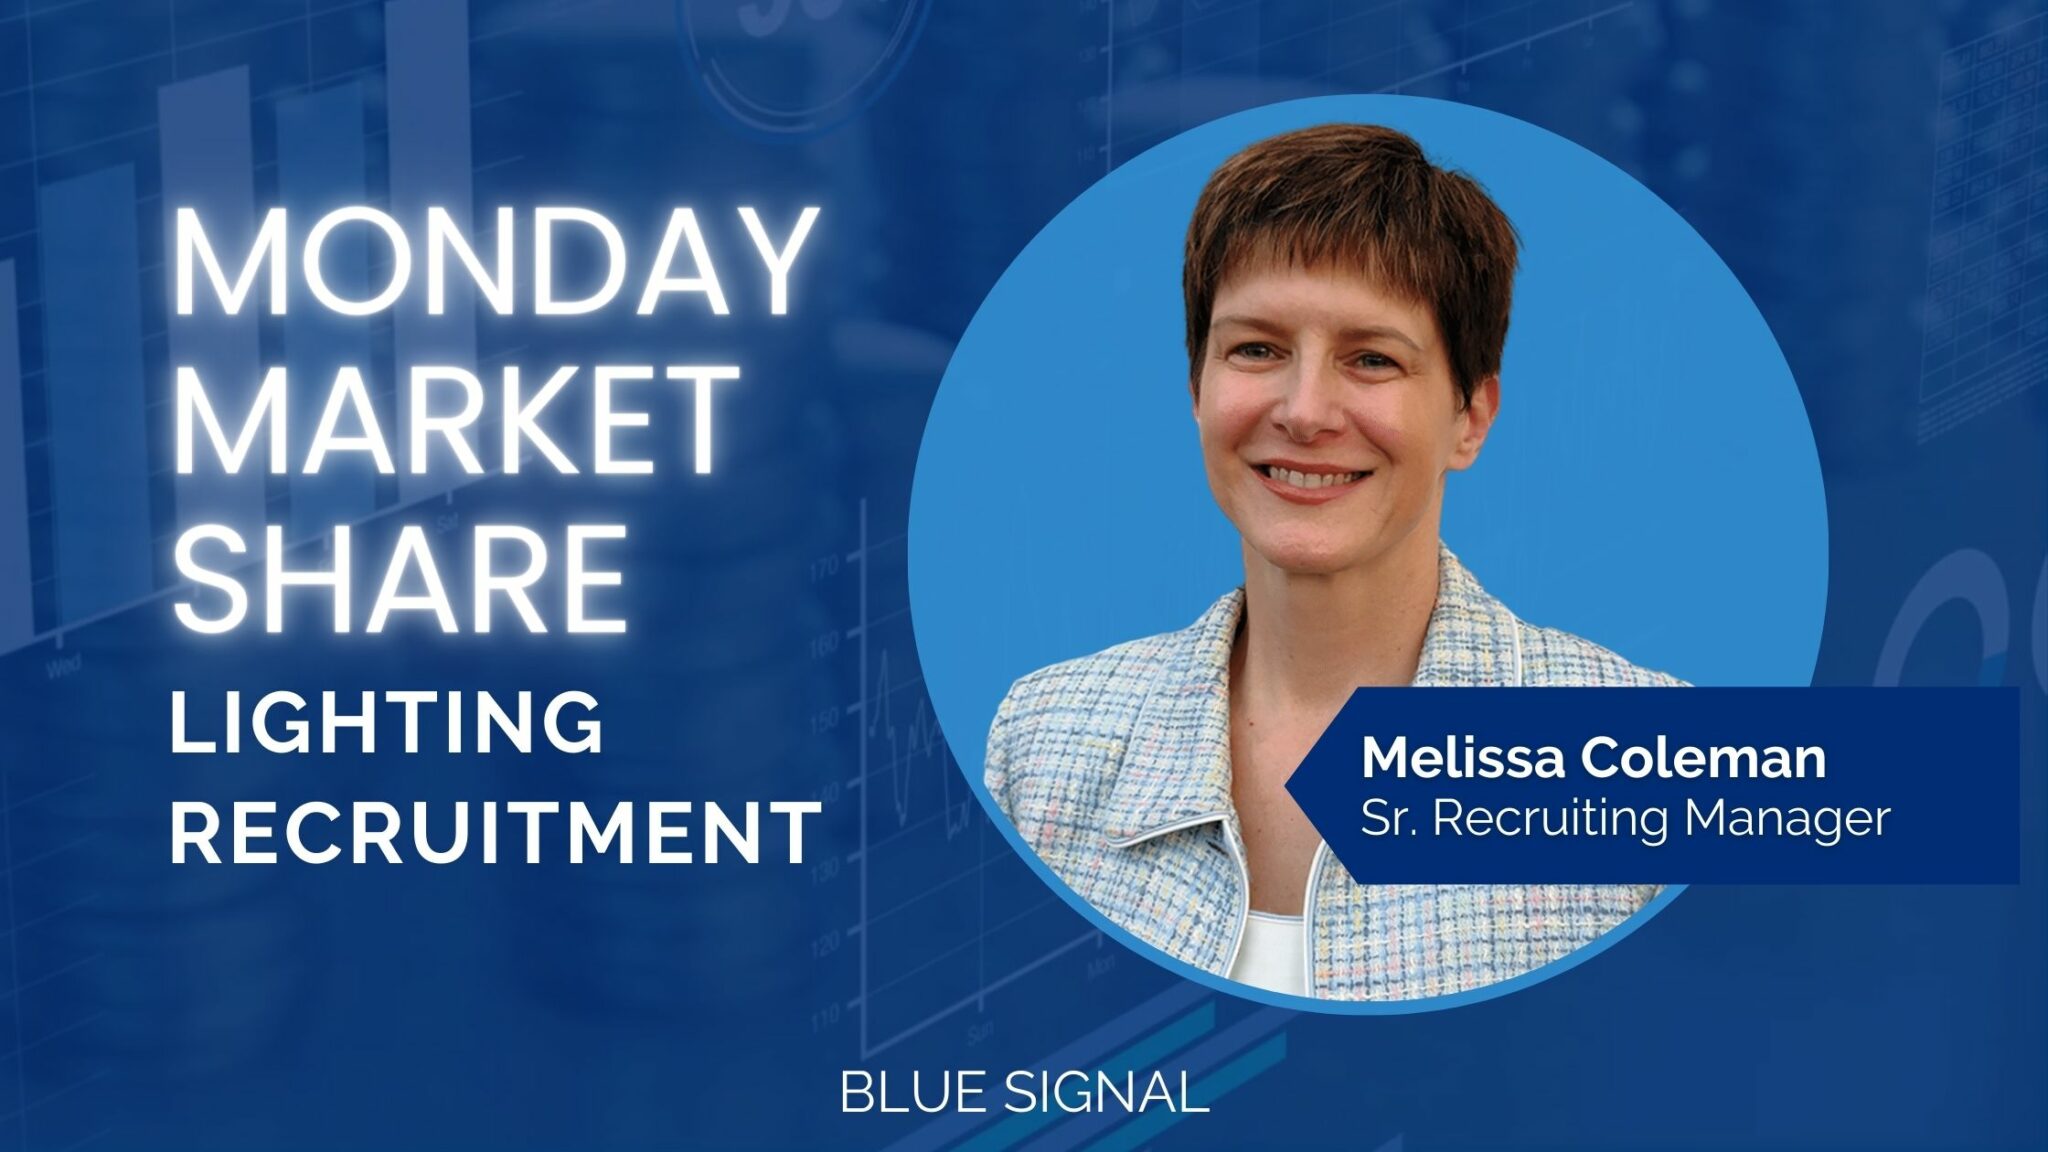 Monday Market Share Lighting Recruitment blog cover